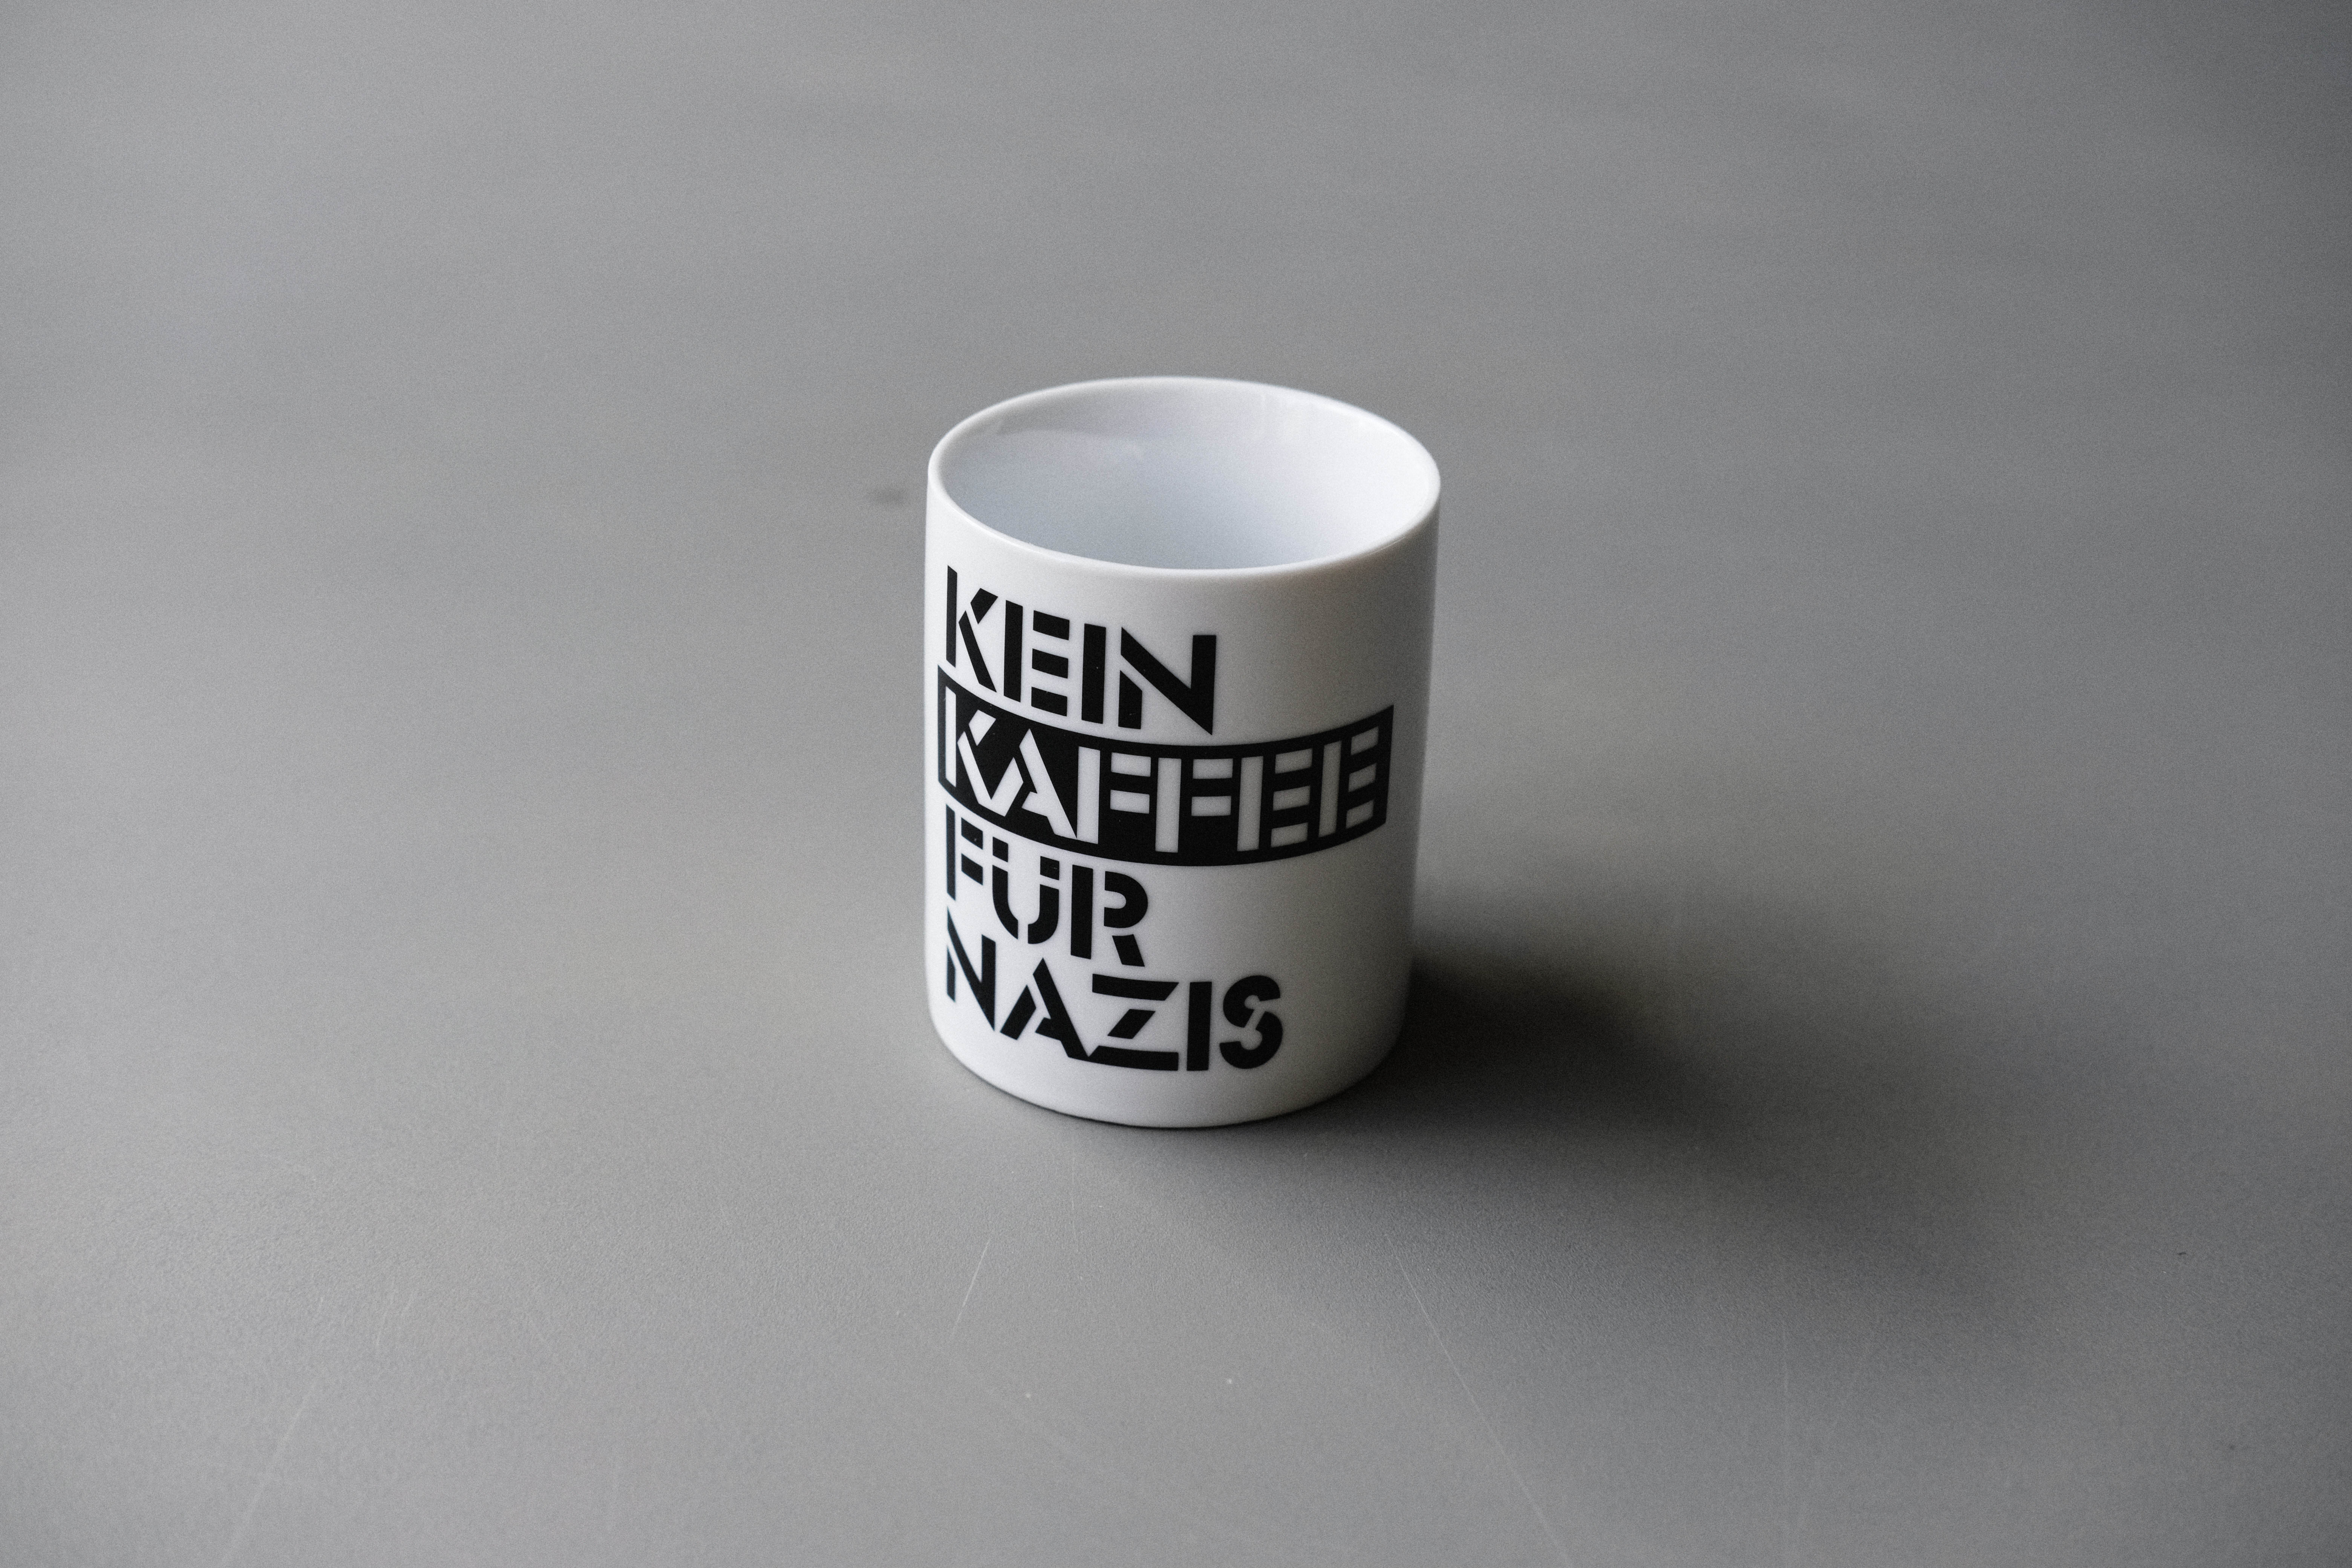 Kaffeetasse - Kein Kaffee für Nazis